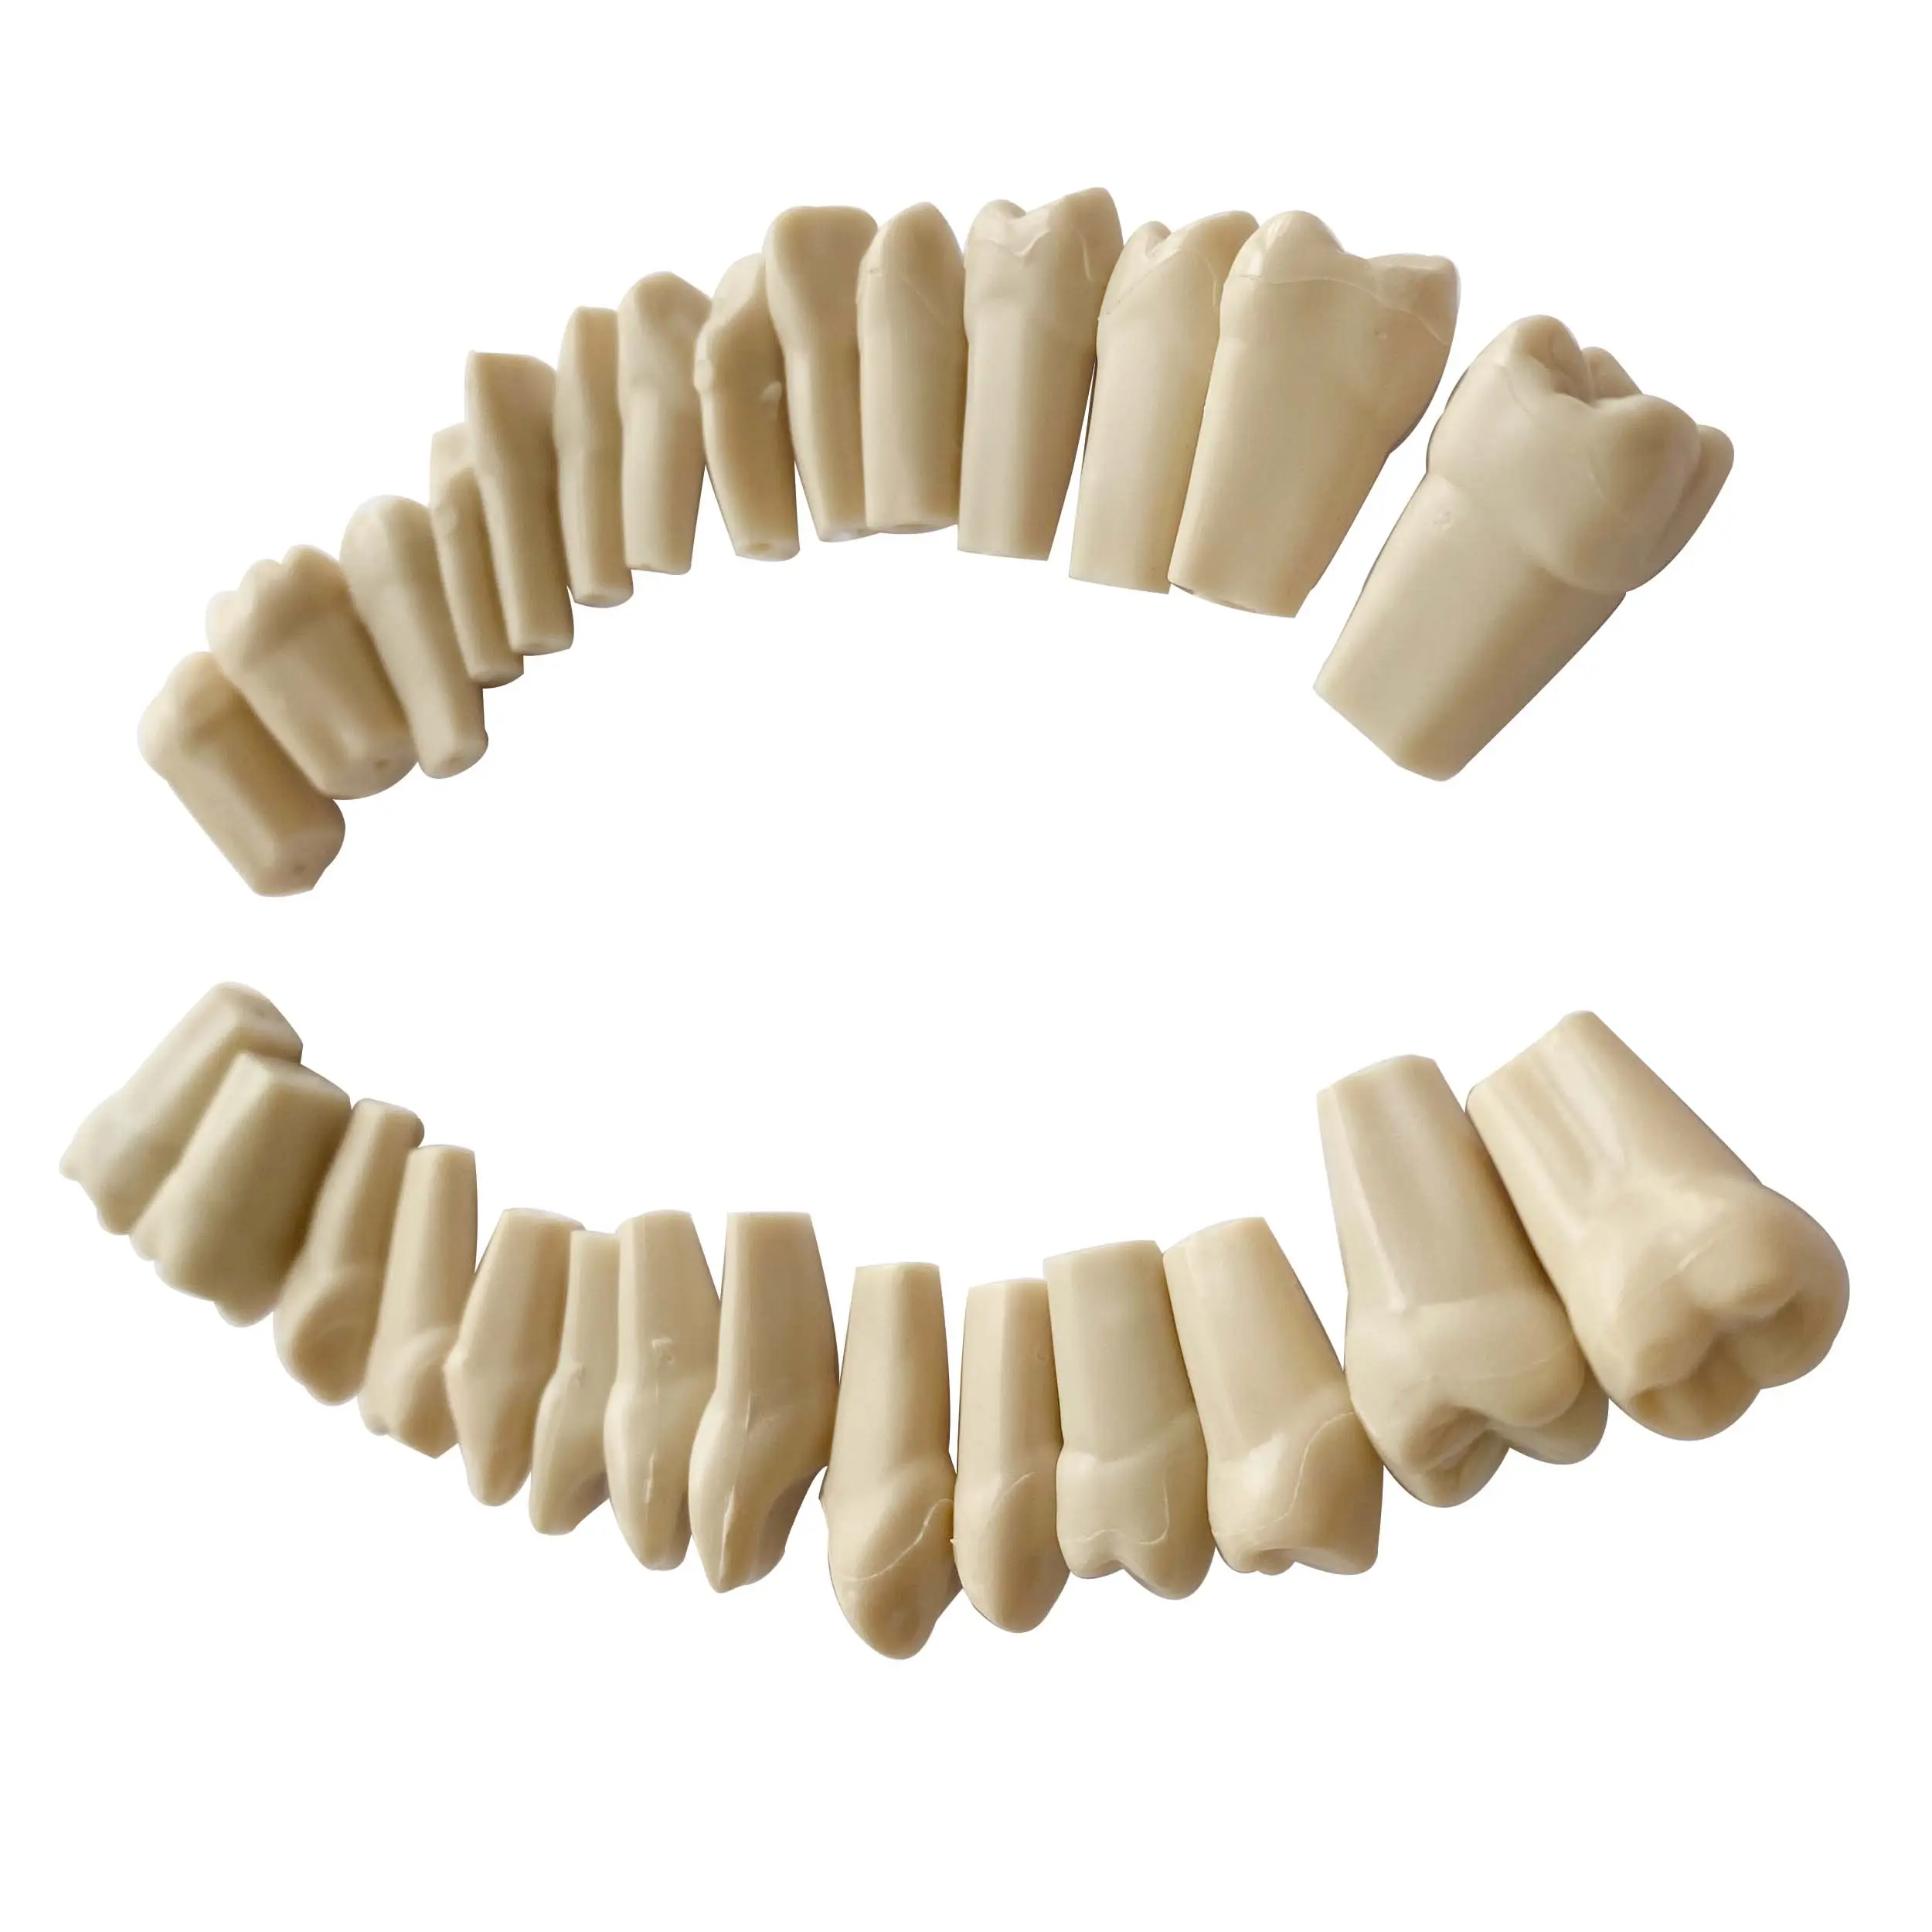 Diş 32 reçine diş modeli diş malzeme plastik diş model beyin diş laboratuvarı ürünleri öğrenciler için